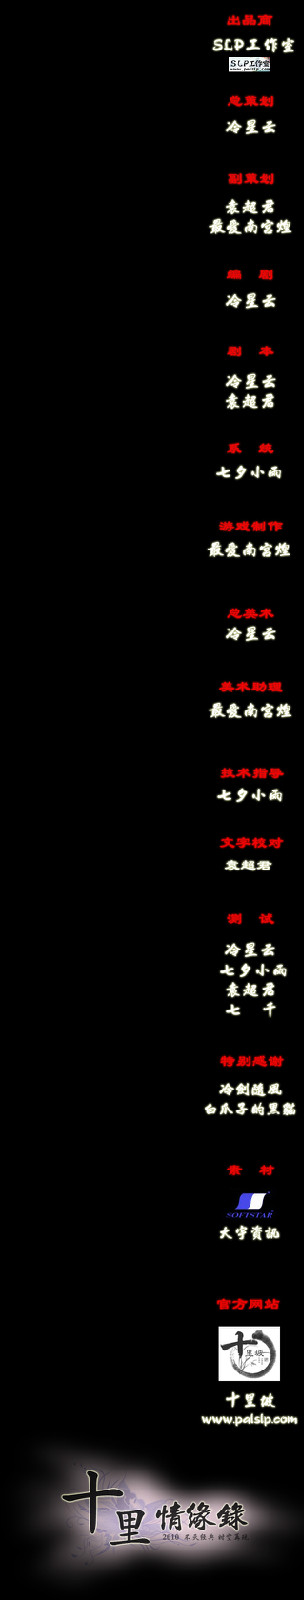 片尾字幕